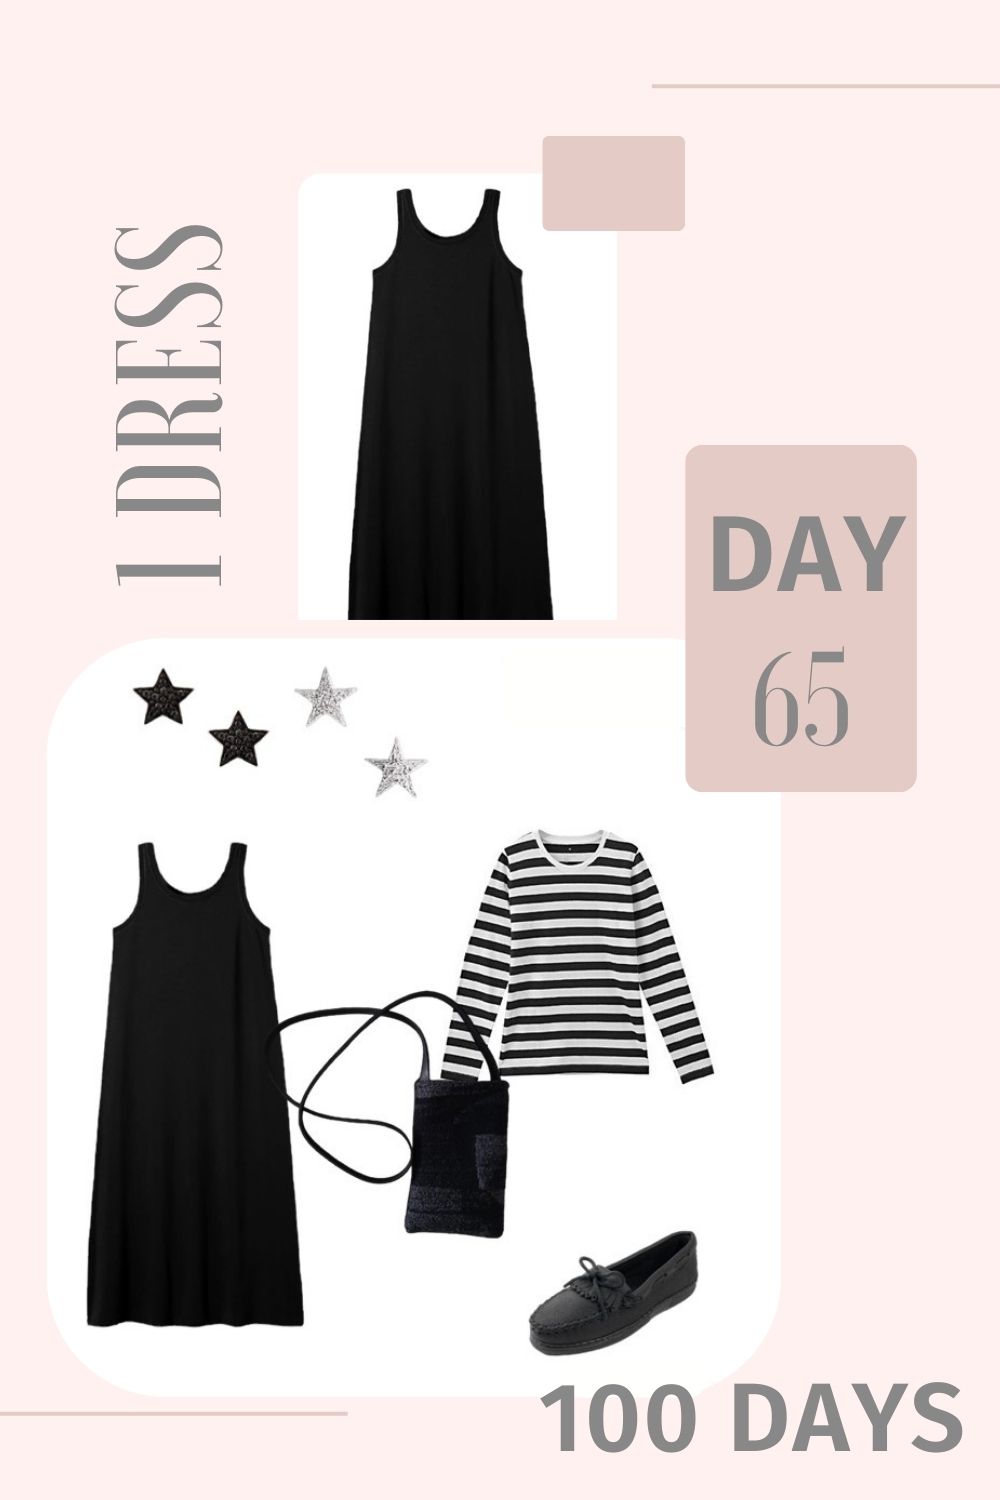 1 Dress 100 Days - Day 65